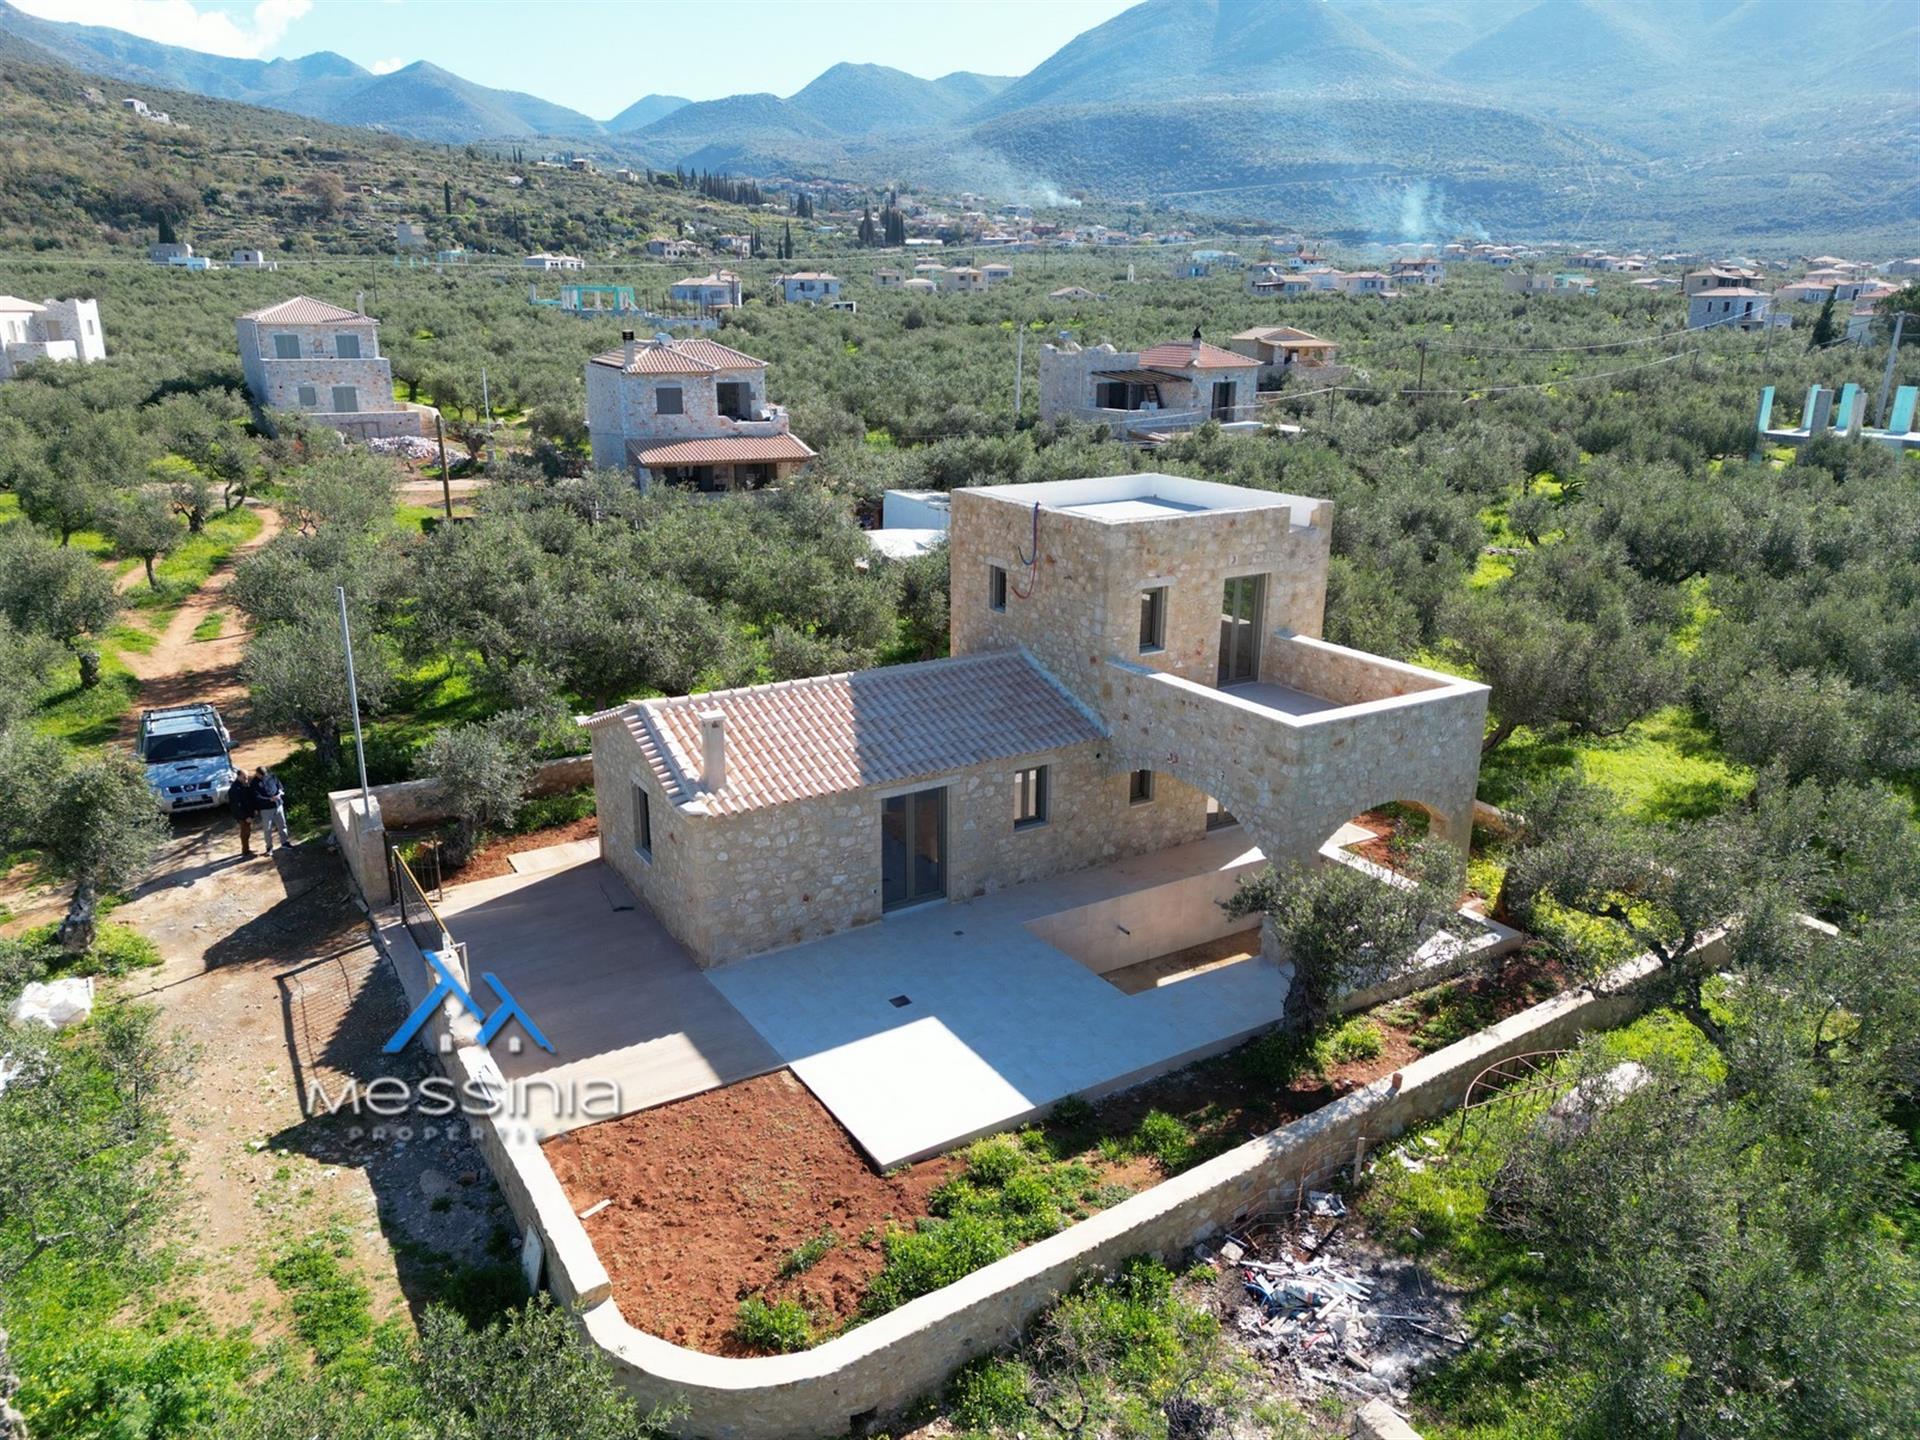 Nuova casa tradizionale in pietra ad Agios Nikolaos